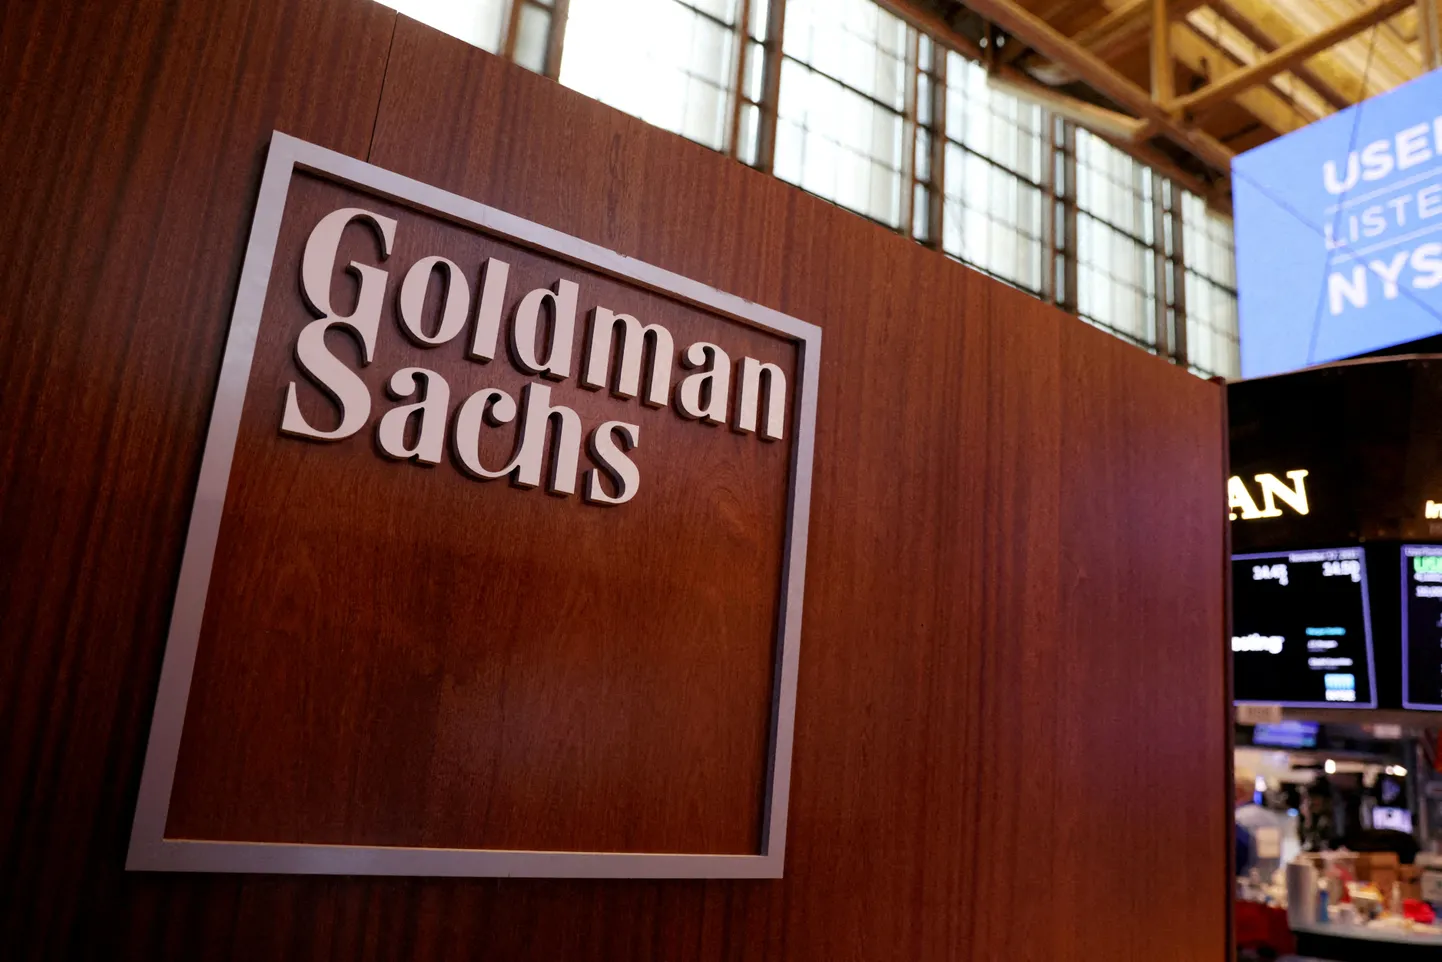 Goldman Sachs.